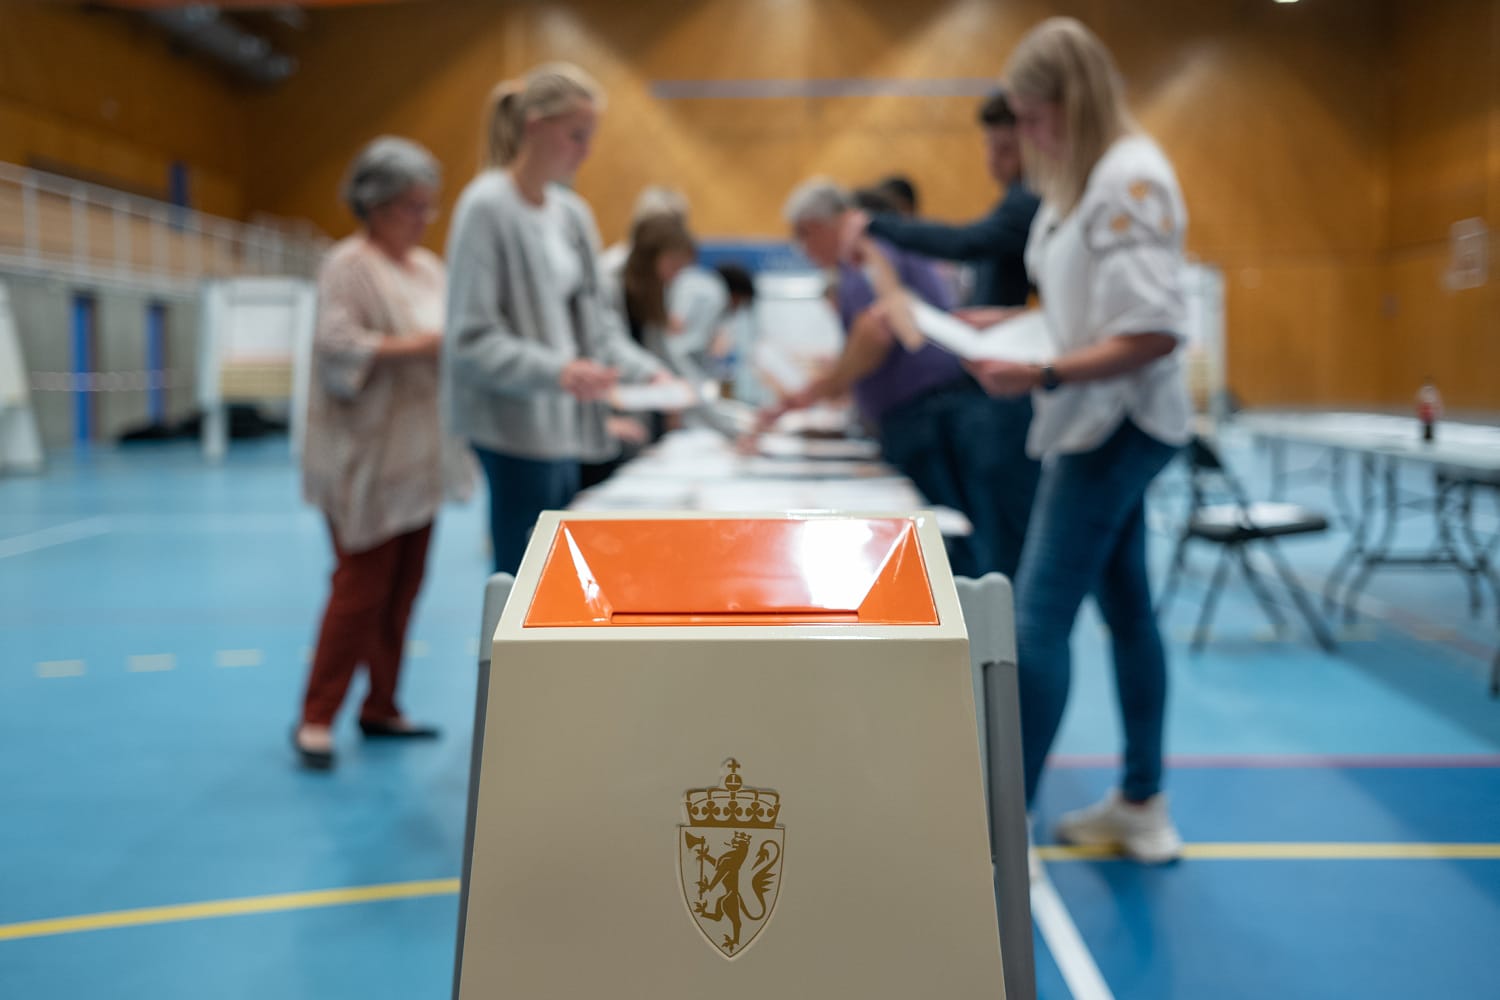 Nærbilde av valgurne med mennesker som teller stemmesedler i bakgrunnen.